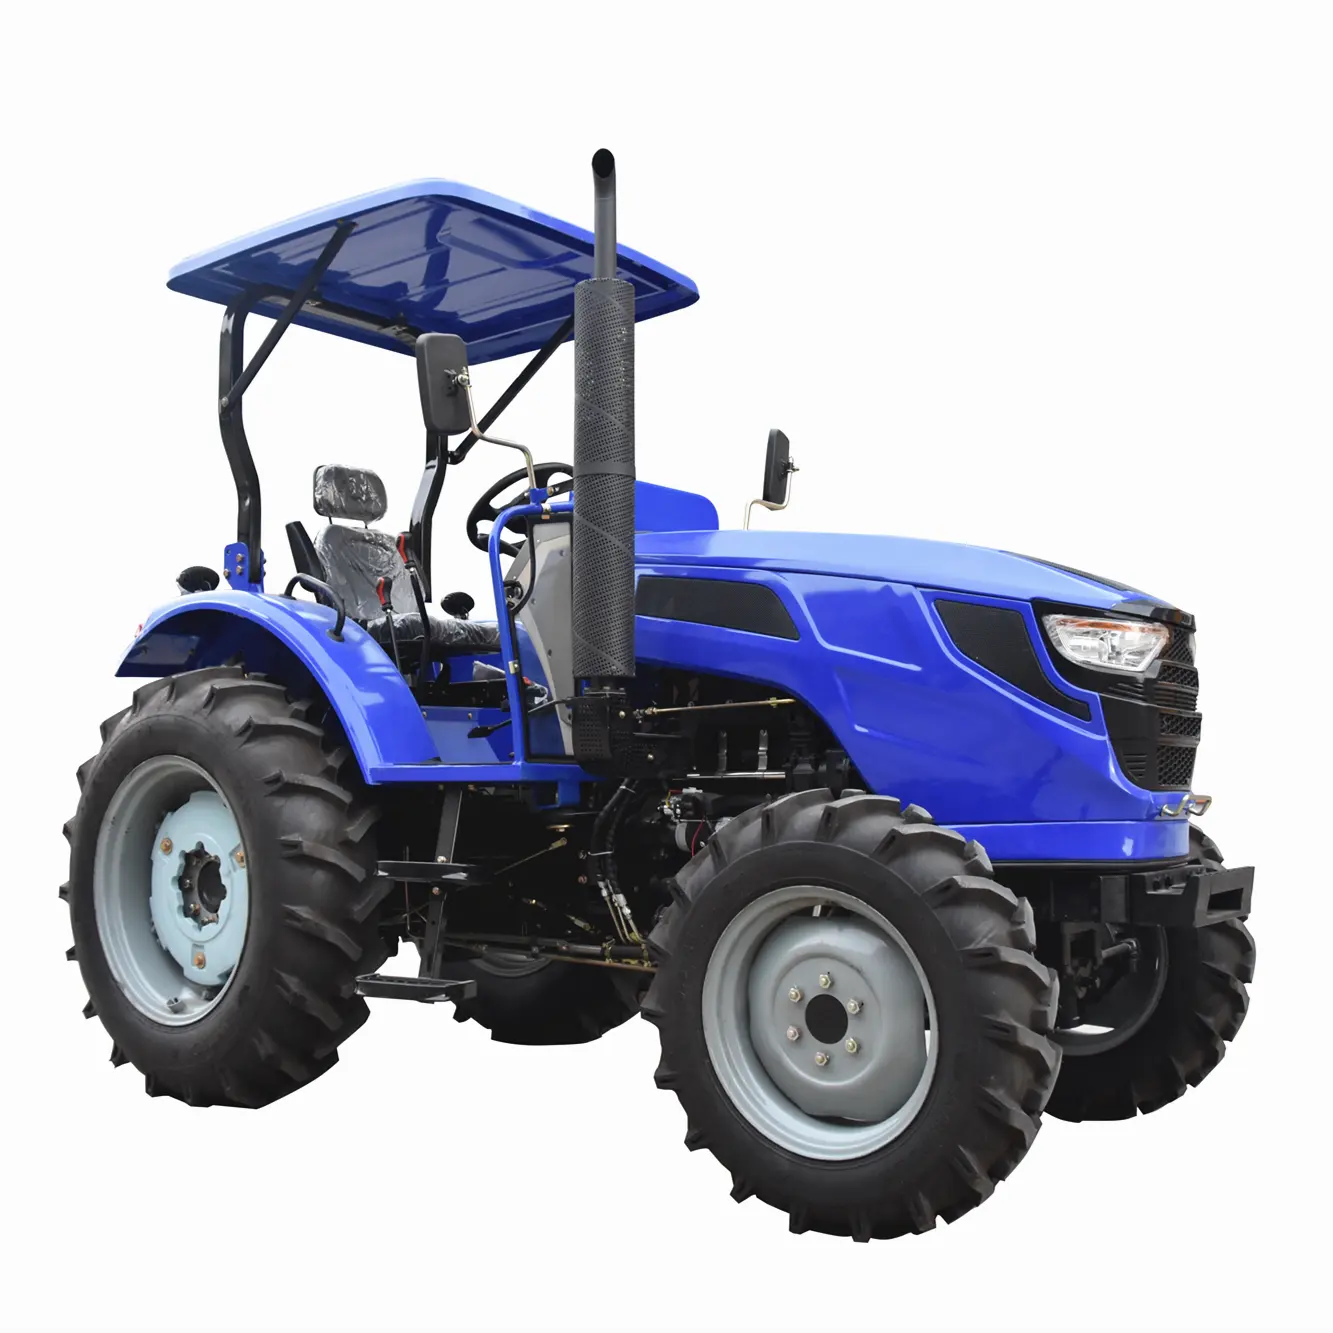 الآلات الزراعية الجرارات الزراعية آلة/مصغرة المعدات الزراعية/جرار حرث زراعي TB 55HP 4WD